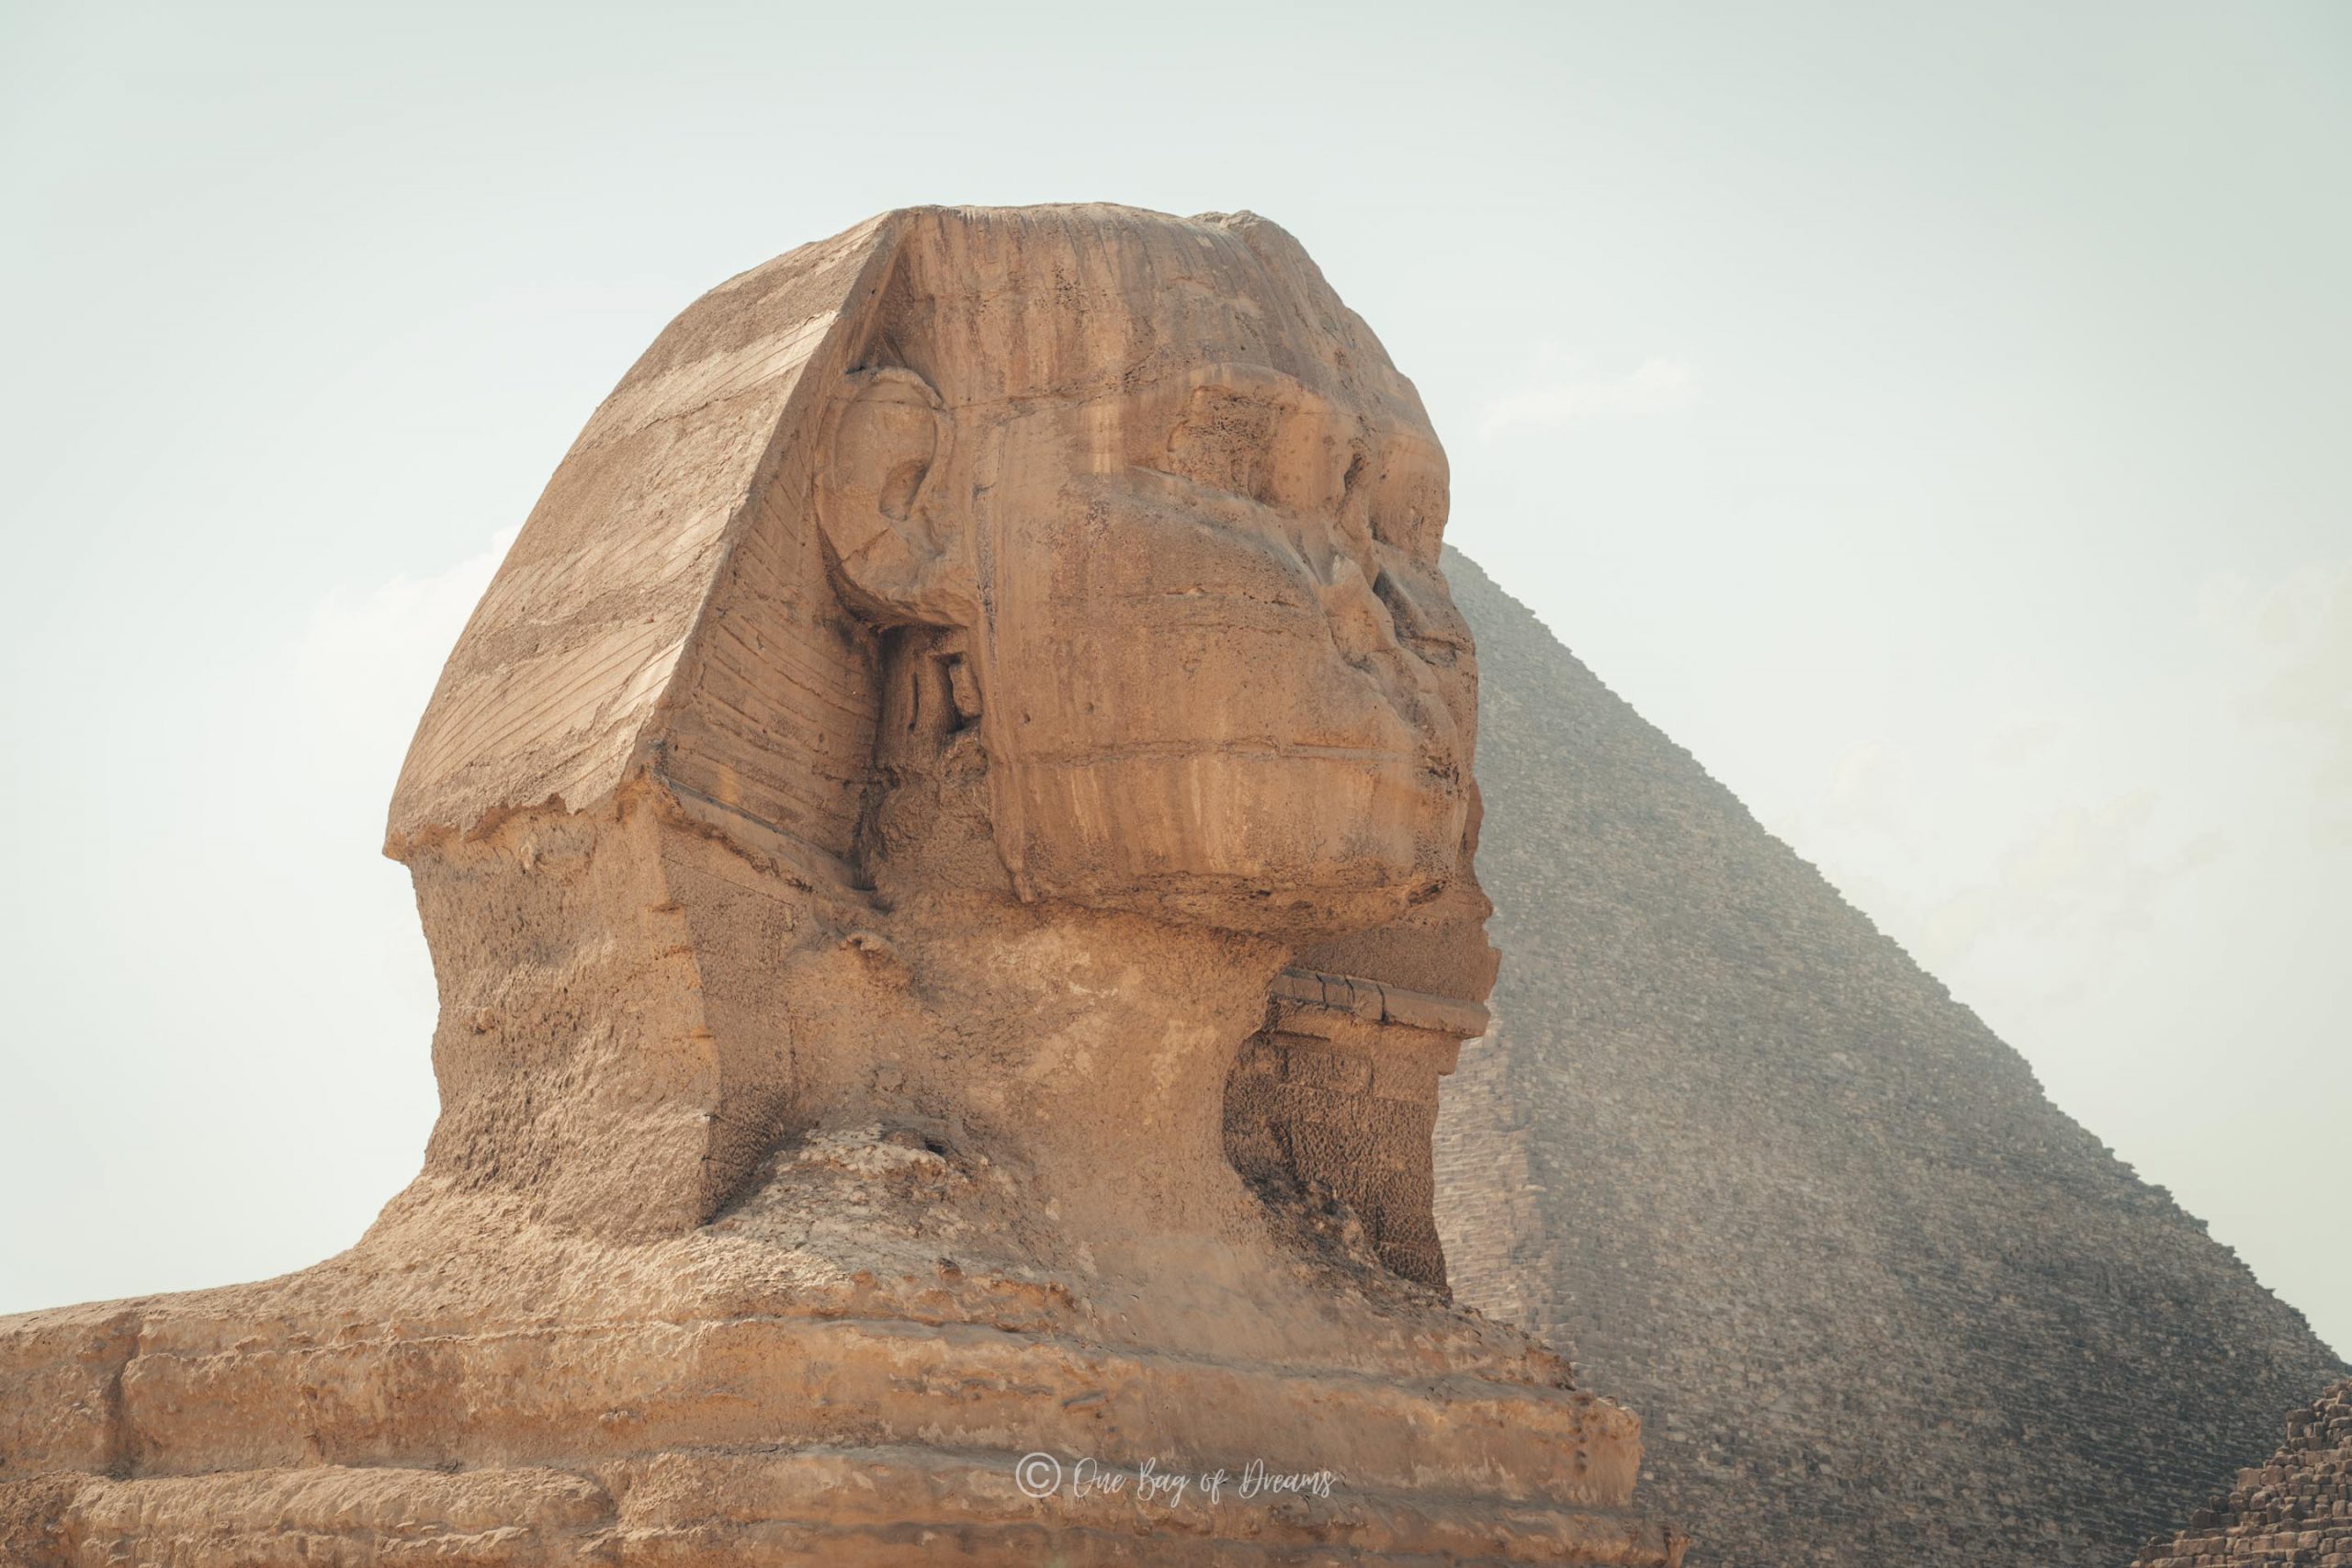 The Sphinx Head in Giza